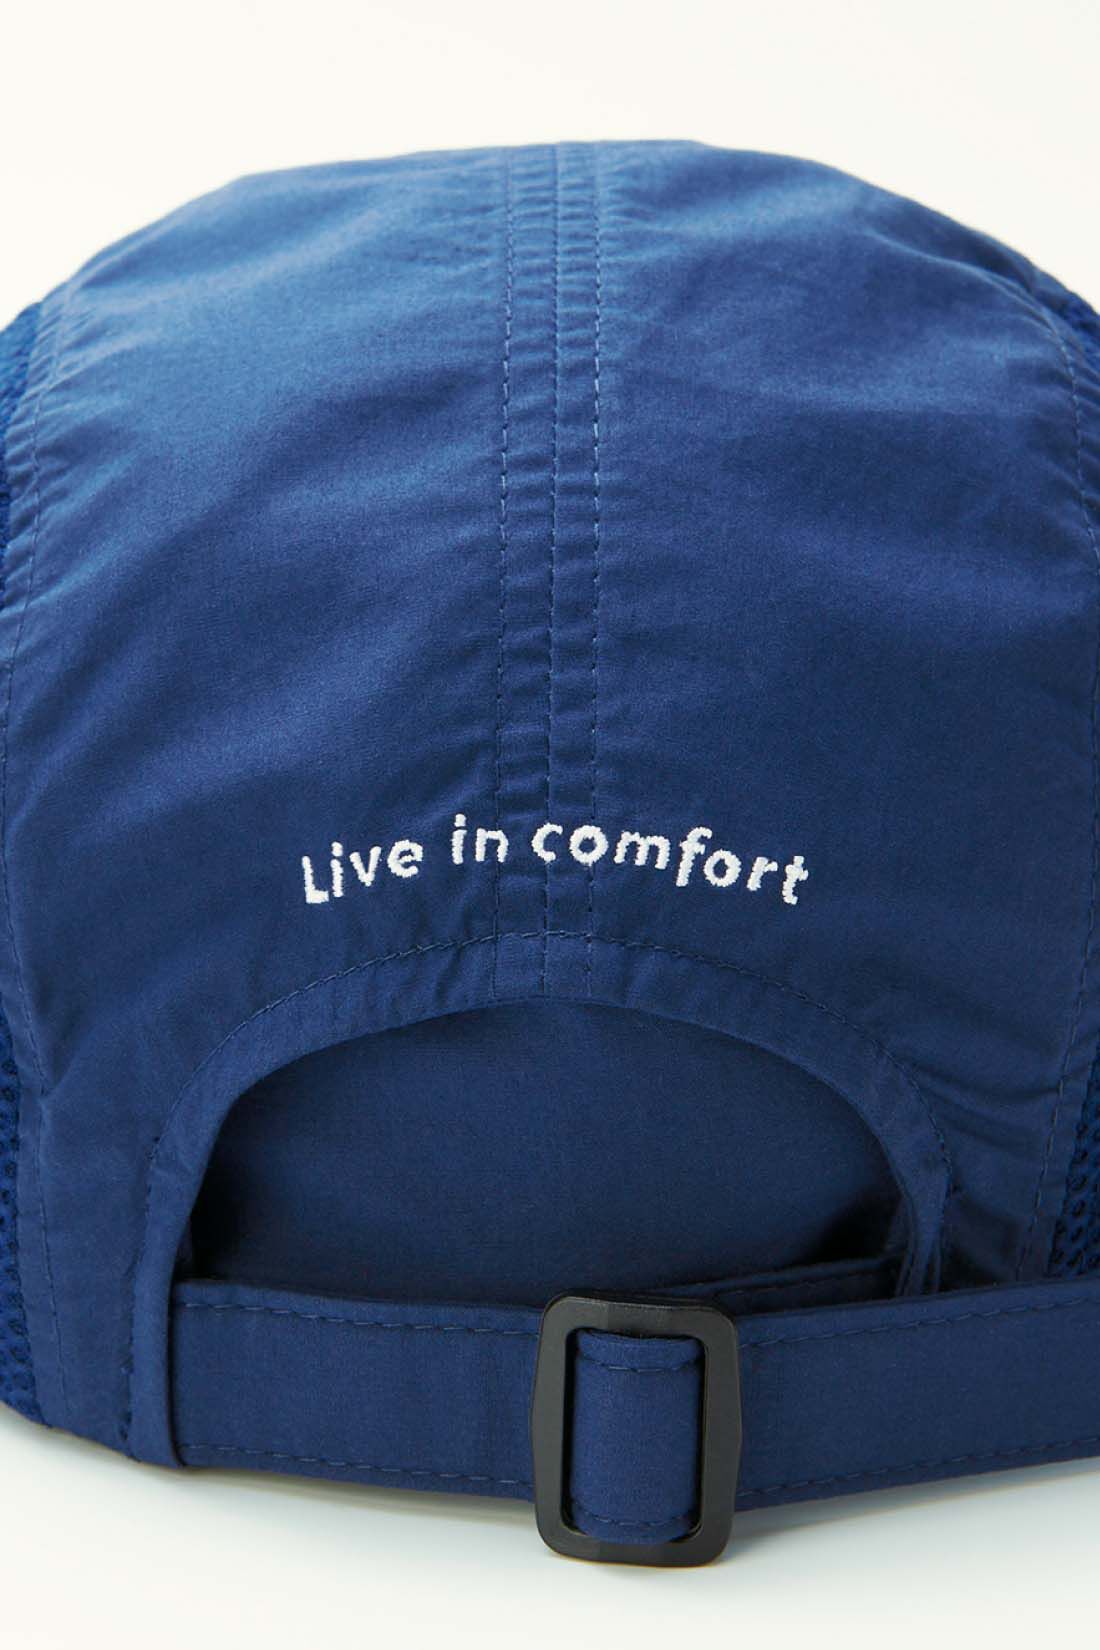 Live in  comfort|リブ イン コンフォート　丸洗いできる 涼やかUVカットメッシュキャップ〈ブラック〉|後ろのアジャスターでサイズ感を調節可能。 ※お届けするカラーとは異なります。